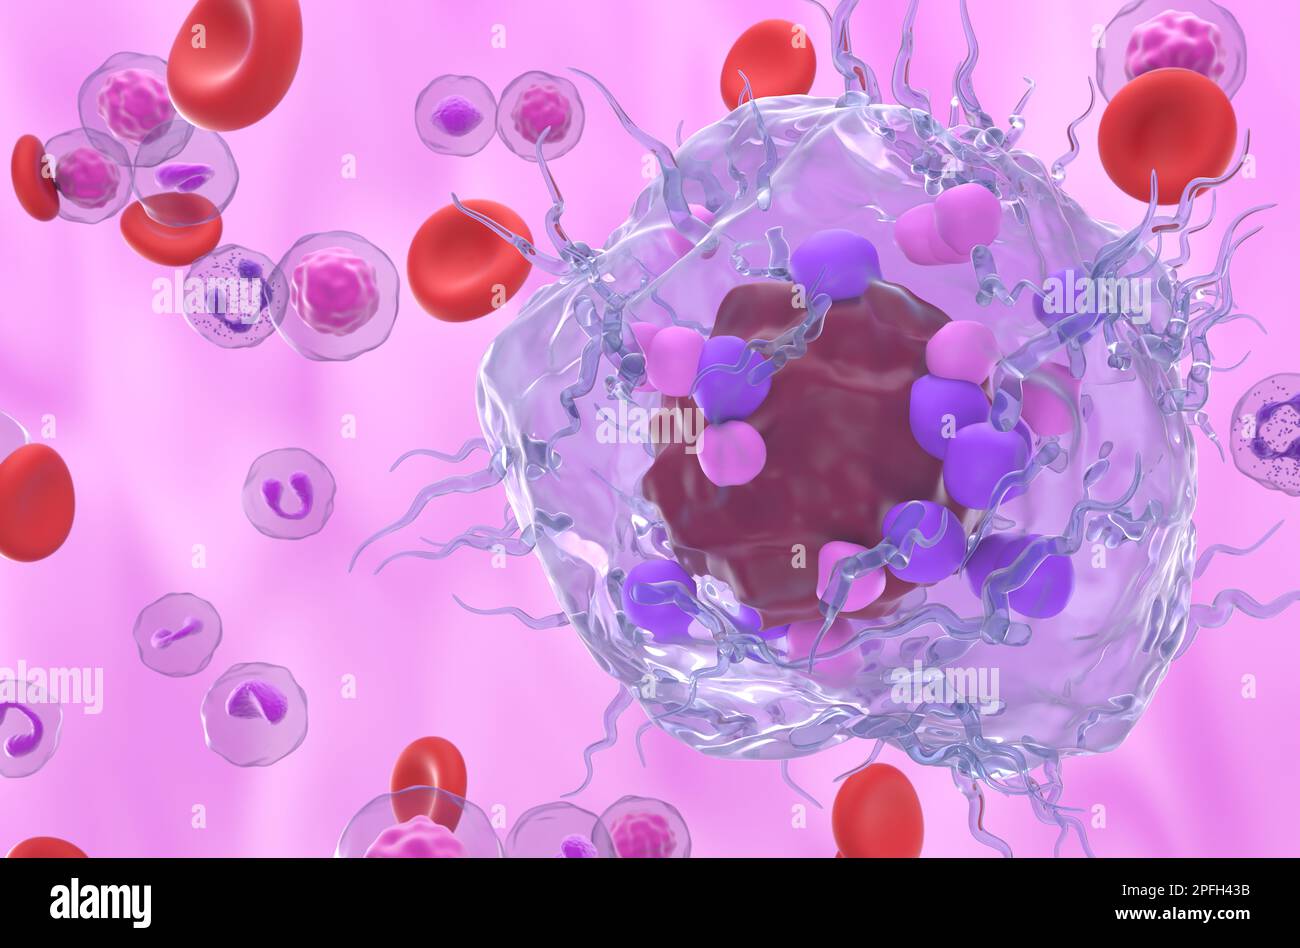 Cellule tumorale neuroendocrine métastatique dans le flux sanguin - 3D illustration vue rapprochée Banque D'Images